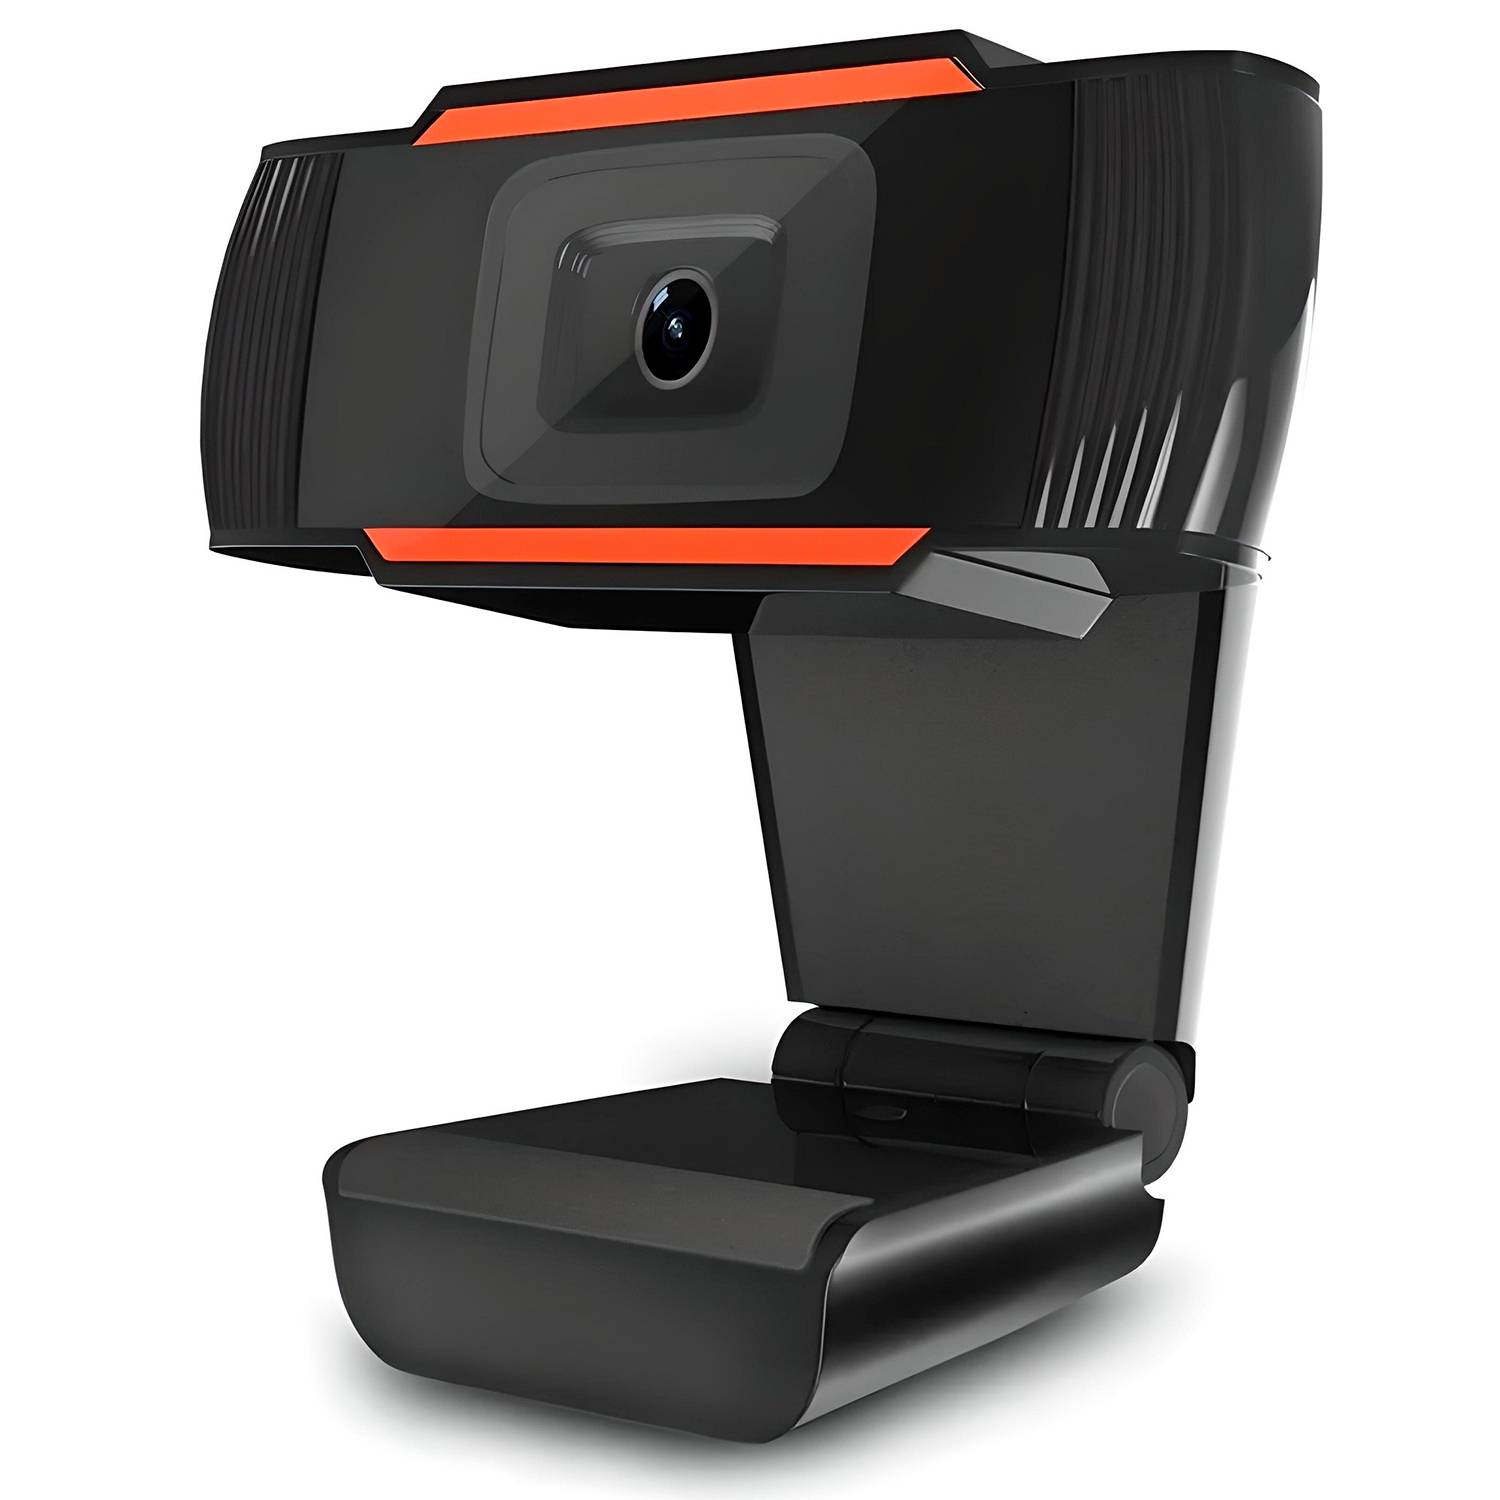 Cámara web inteligente para cámara PC, cámara web USB 1080P con micrófono  para escritorio / computadora portátil / computadora, cámara de video